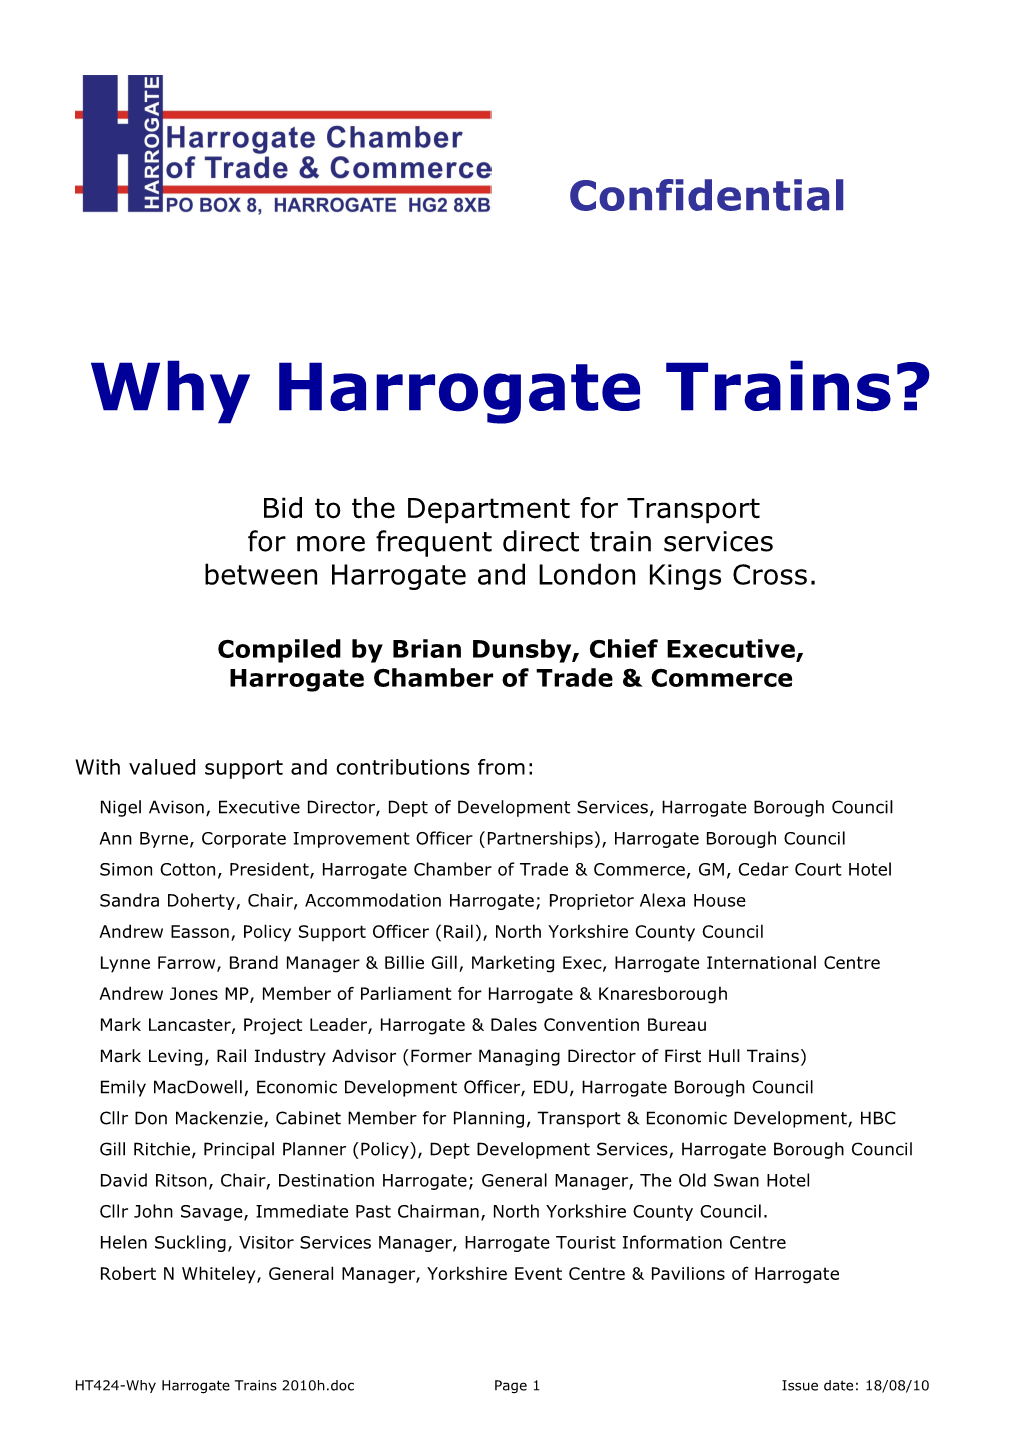 Why Harrogate Trains?